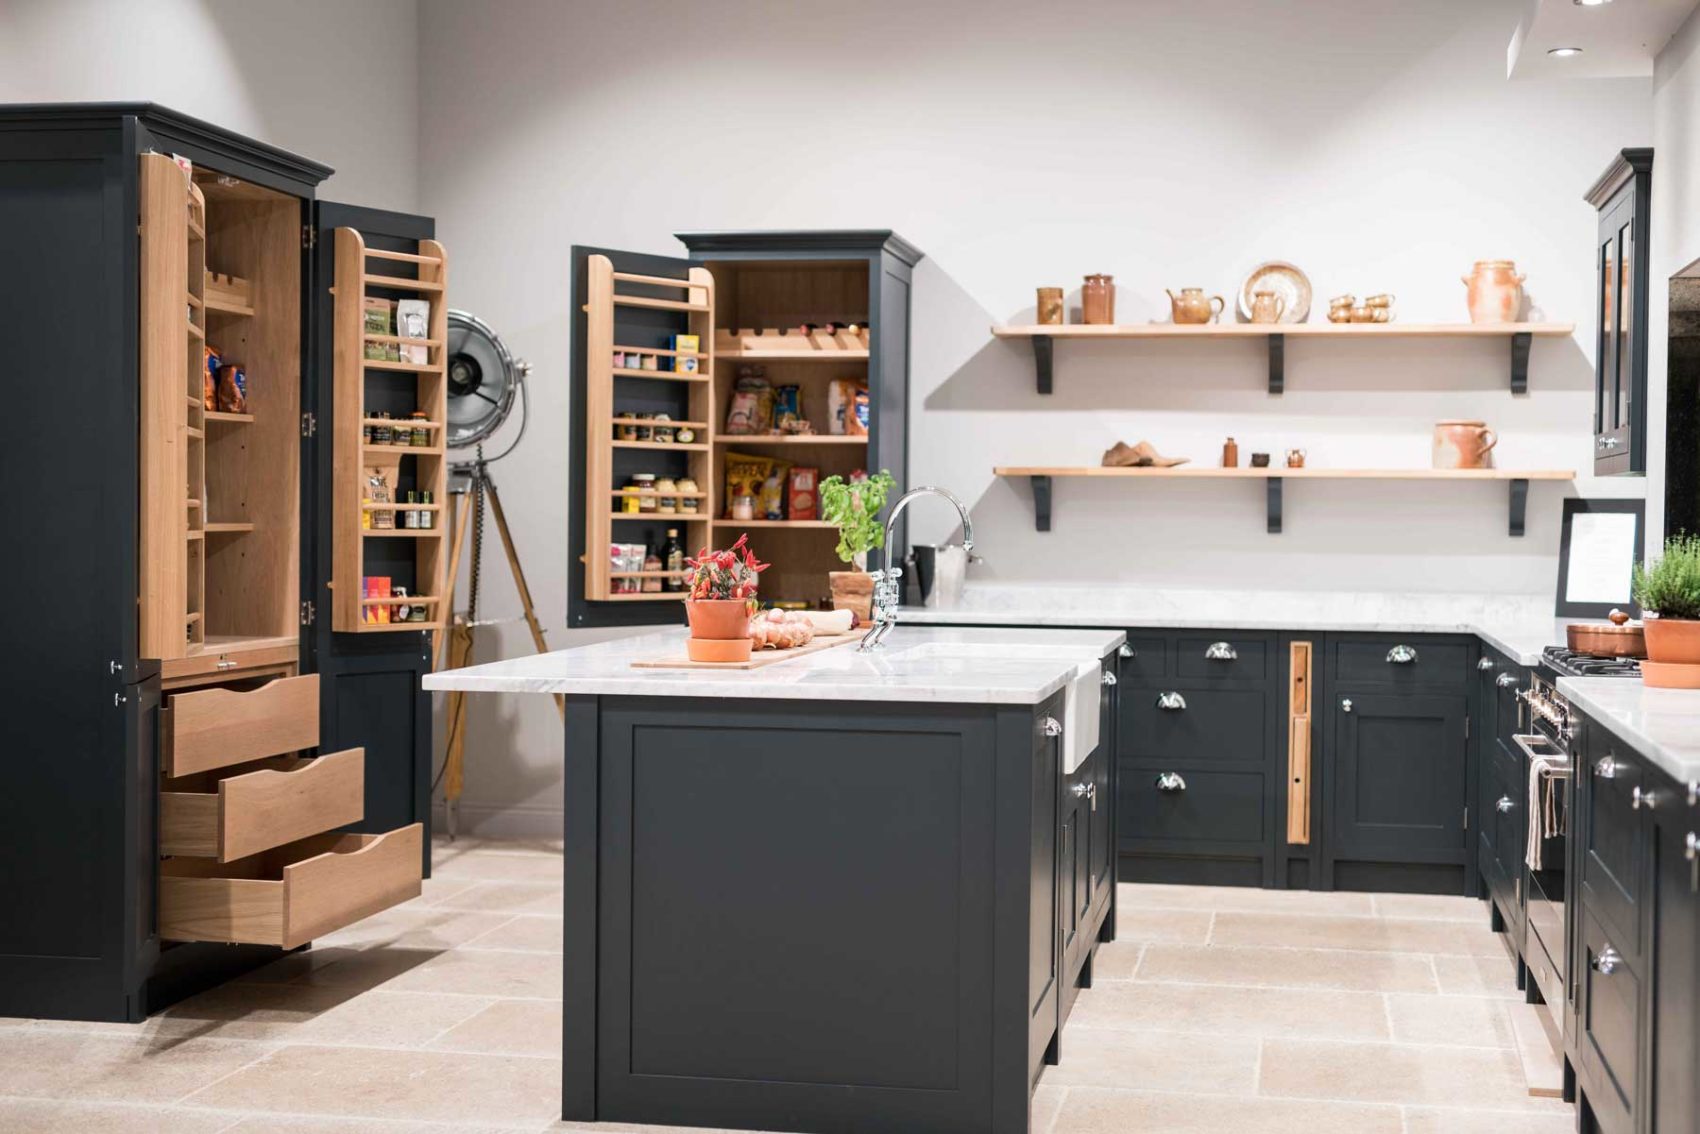 Bespoke kitchen storage solutions